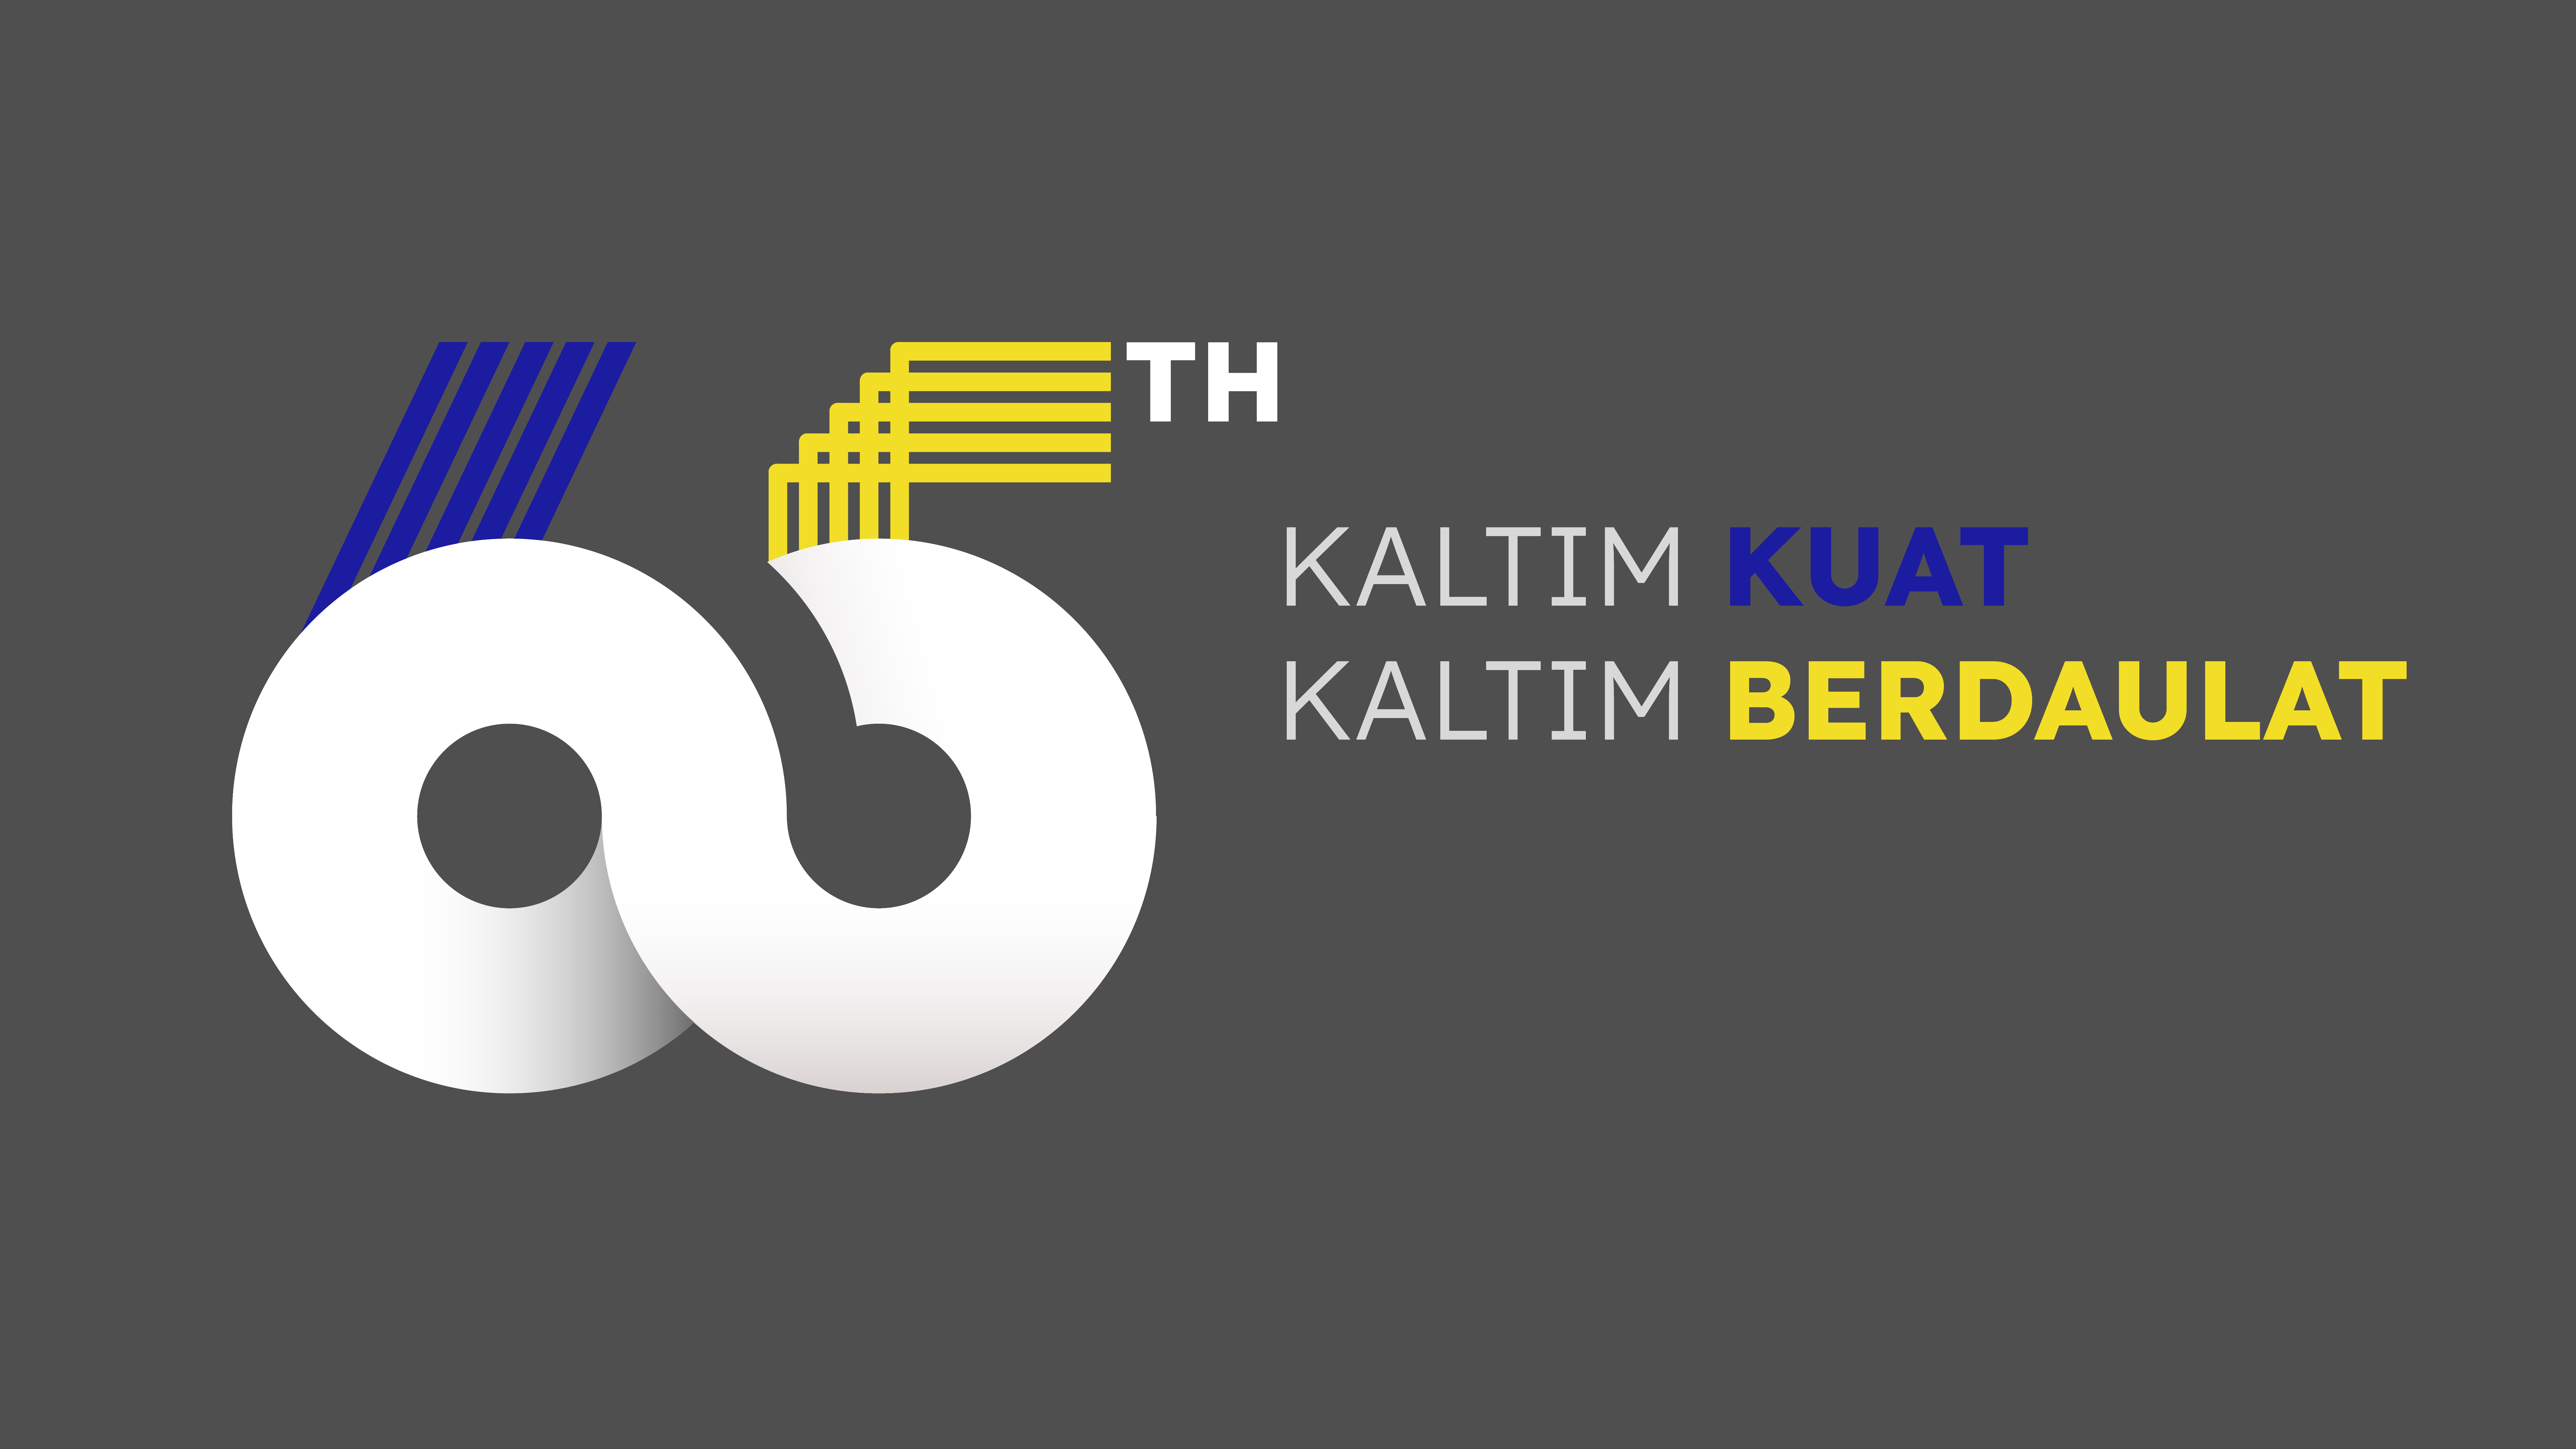 HUT Kaltim Ke-65: Logo dan Tema Kaltim Kuat Kaltim Berdaulat